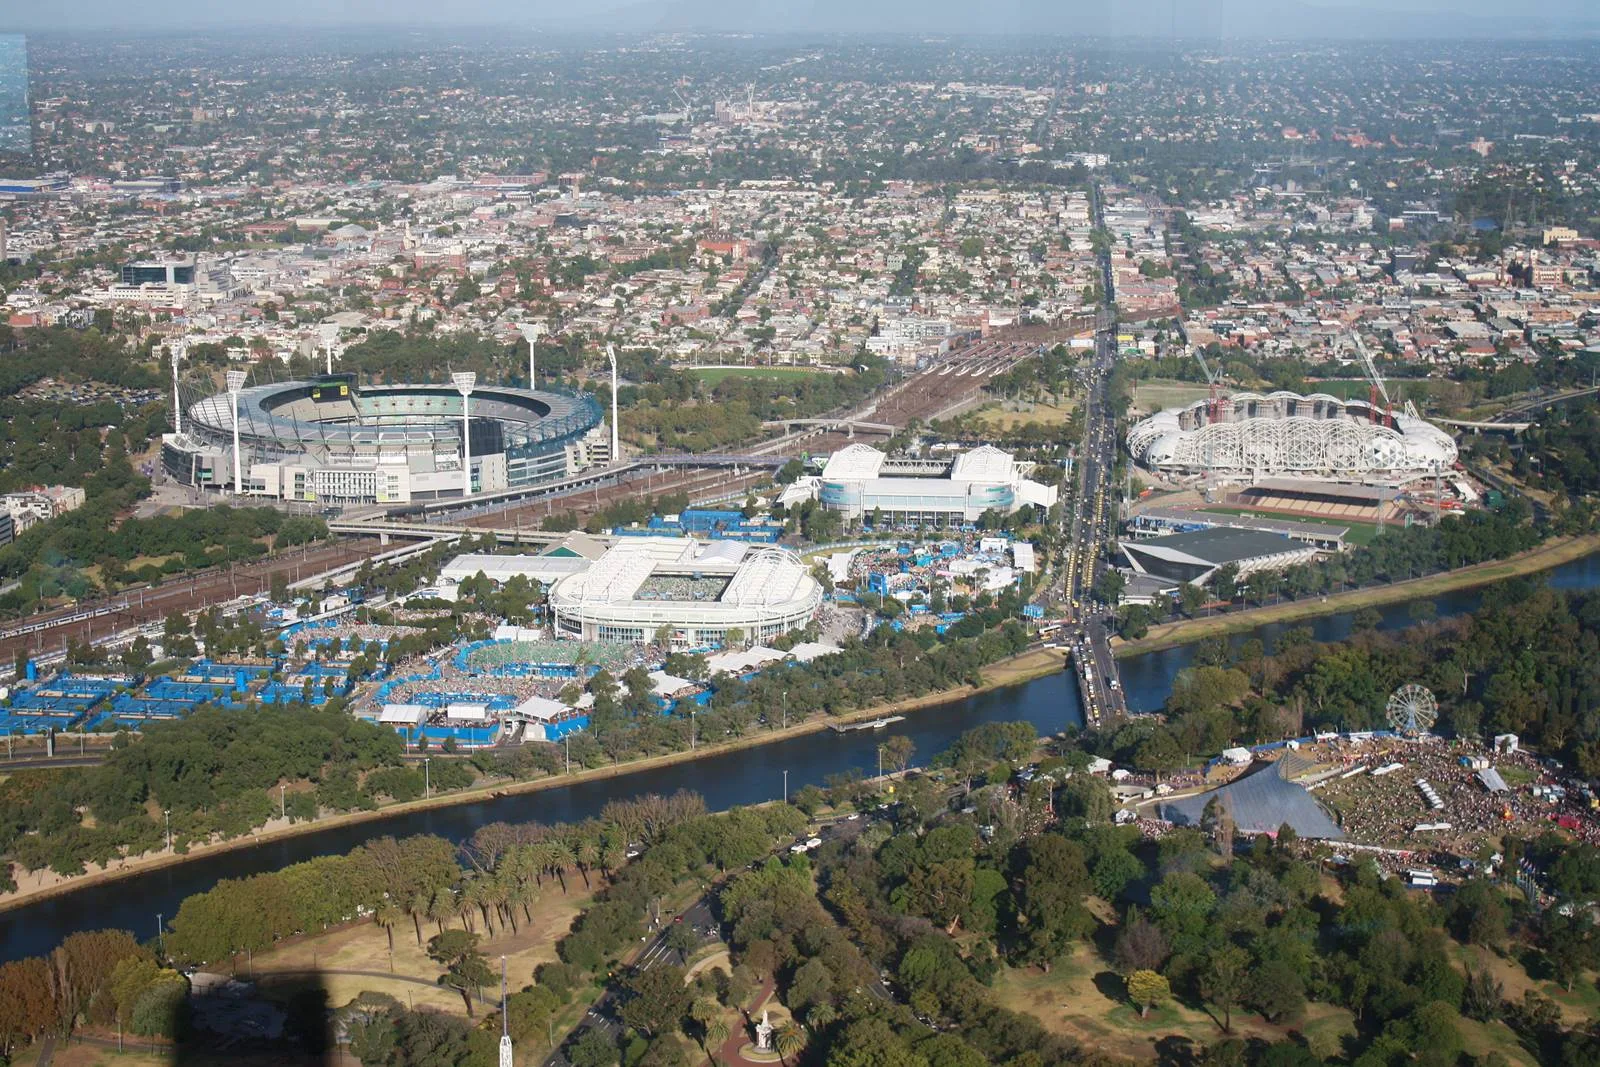 墨爾本-市區-墨爾本景點-推薦-墨爾本公園-Melbourne Park-行程-墨爾本旅遊景點-墨爾本自由行景點-墨爾本遊記-墨爾本必玩景點-墨爾本必去景點-墨爾本必遊景點-墨爾本好玩景點-墨爾本觀光景點-melbourne-city-attraction